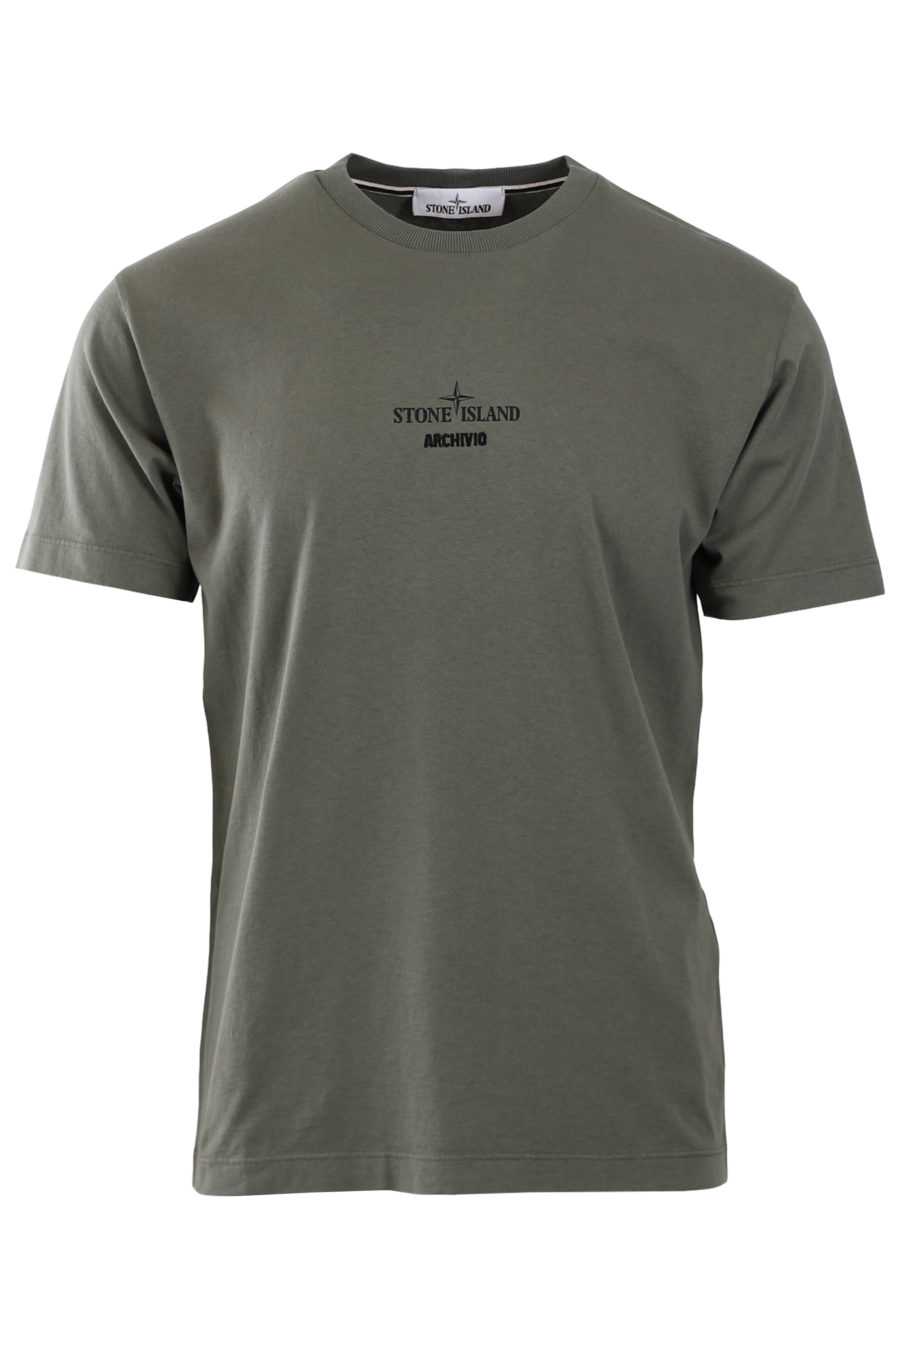 Military T-shirt "Archivio" - 918156fa9bc978528bd7c238e25a4fa0fdcec7fa